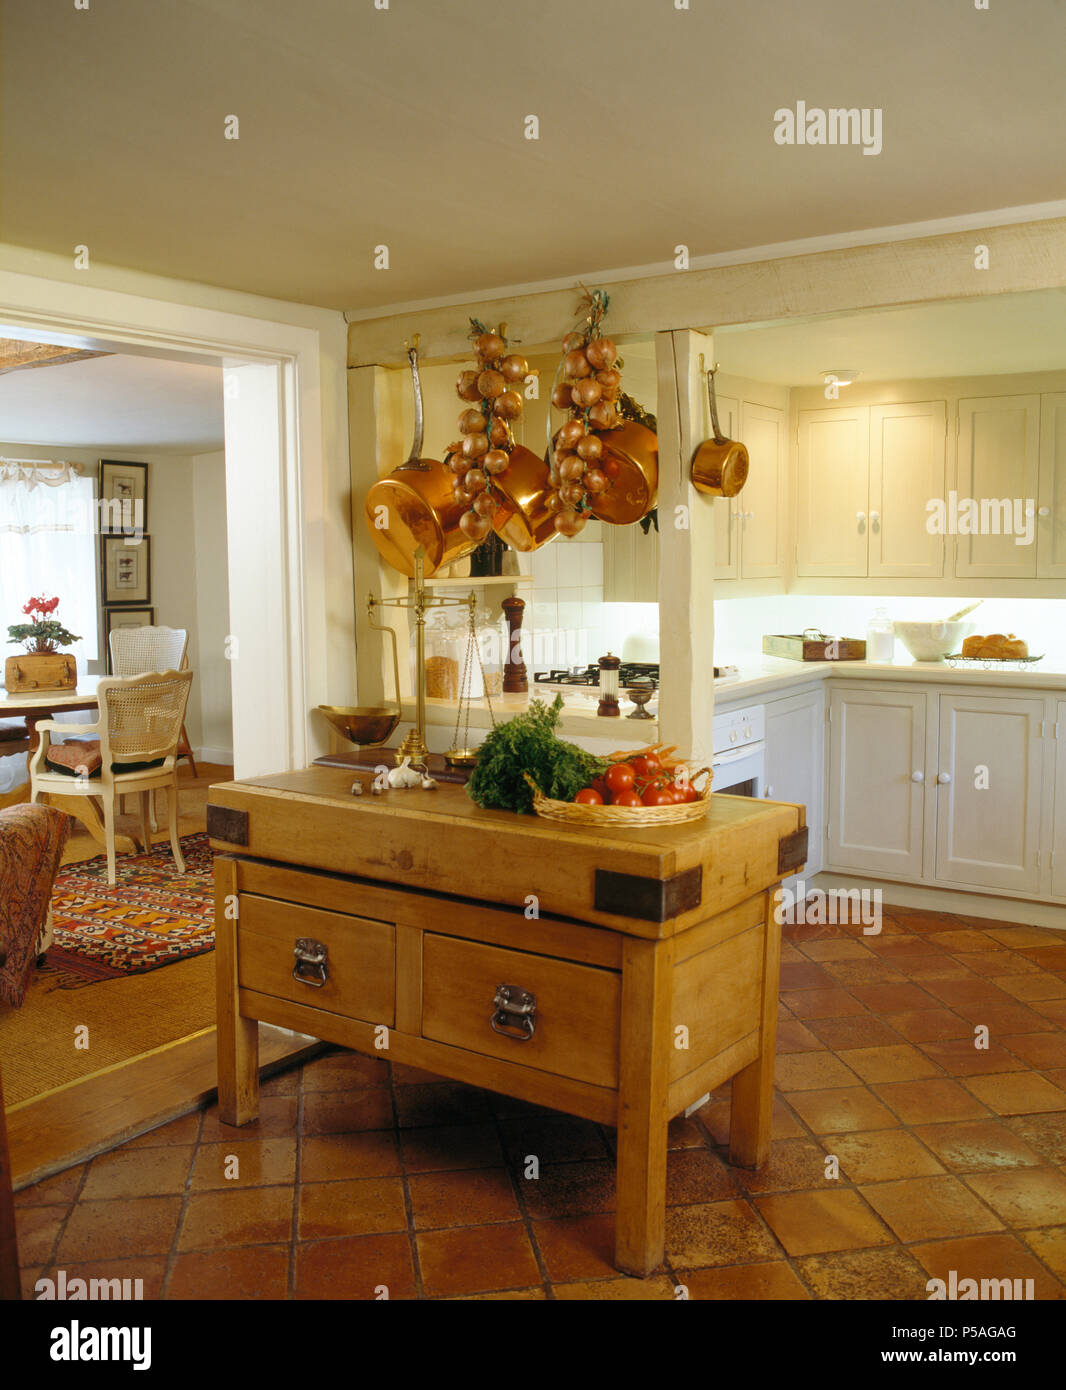 Kupfer Pfannen und Streicher von Zwiebeln hängen von Balken über dem Butcher Block in Küche mit Terrakotta-Fliesen Stockfoto